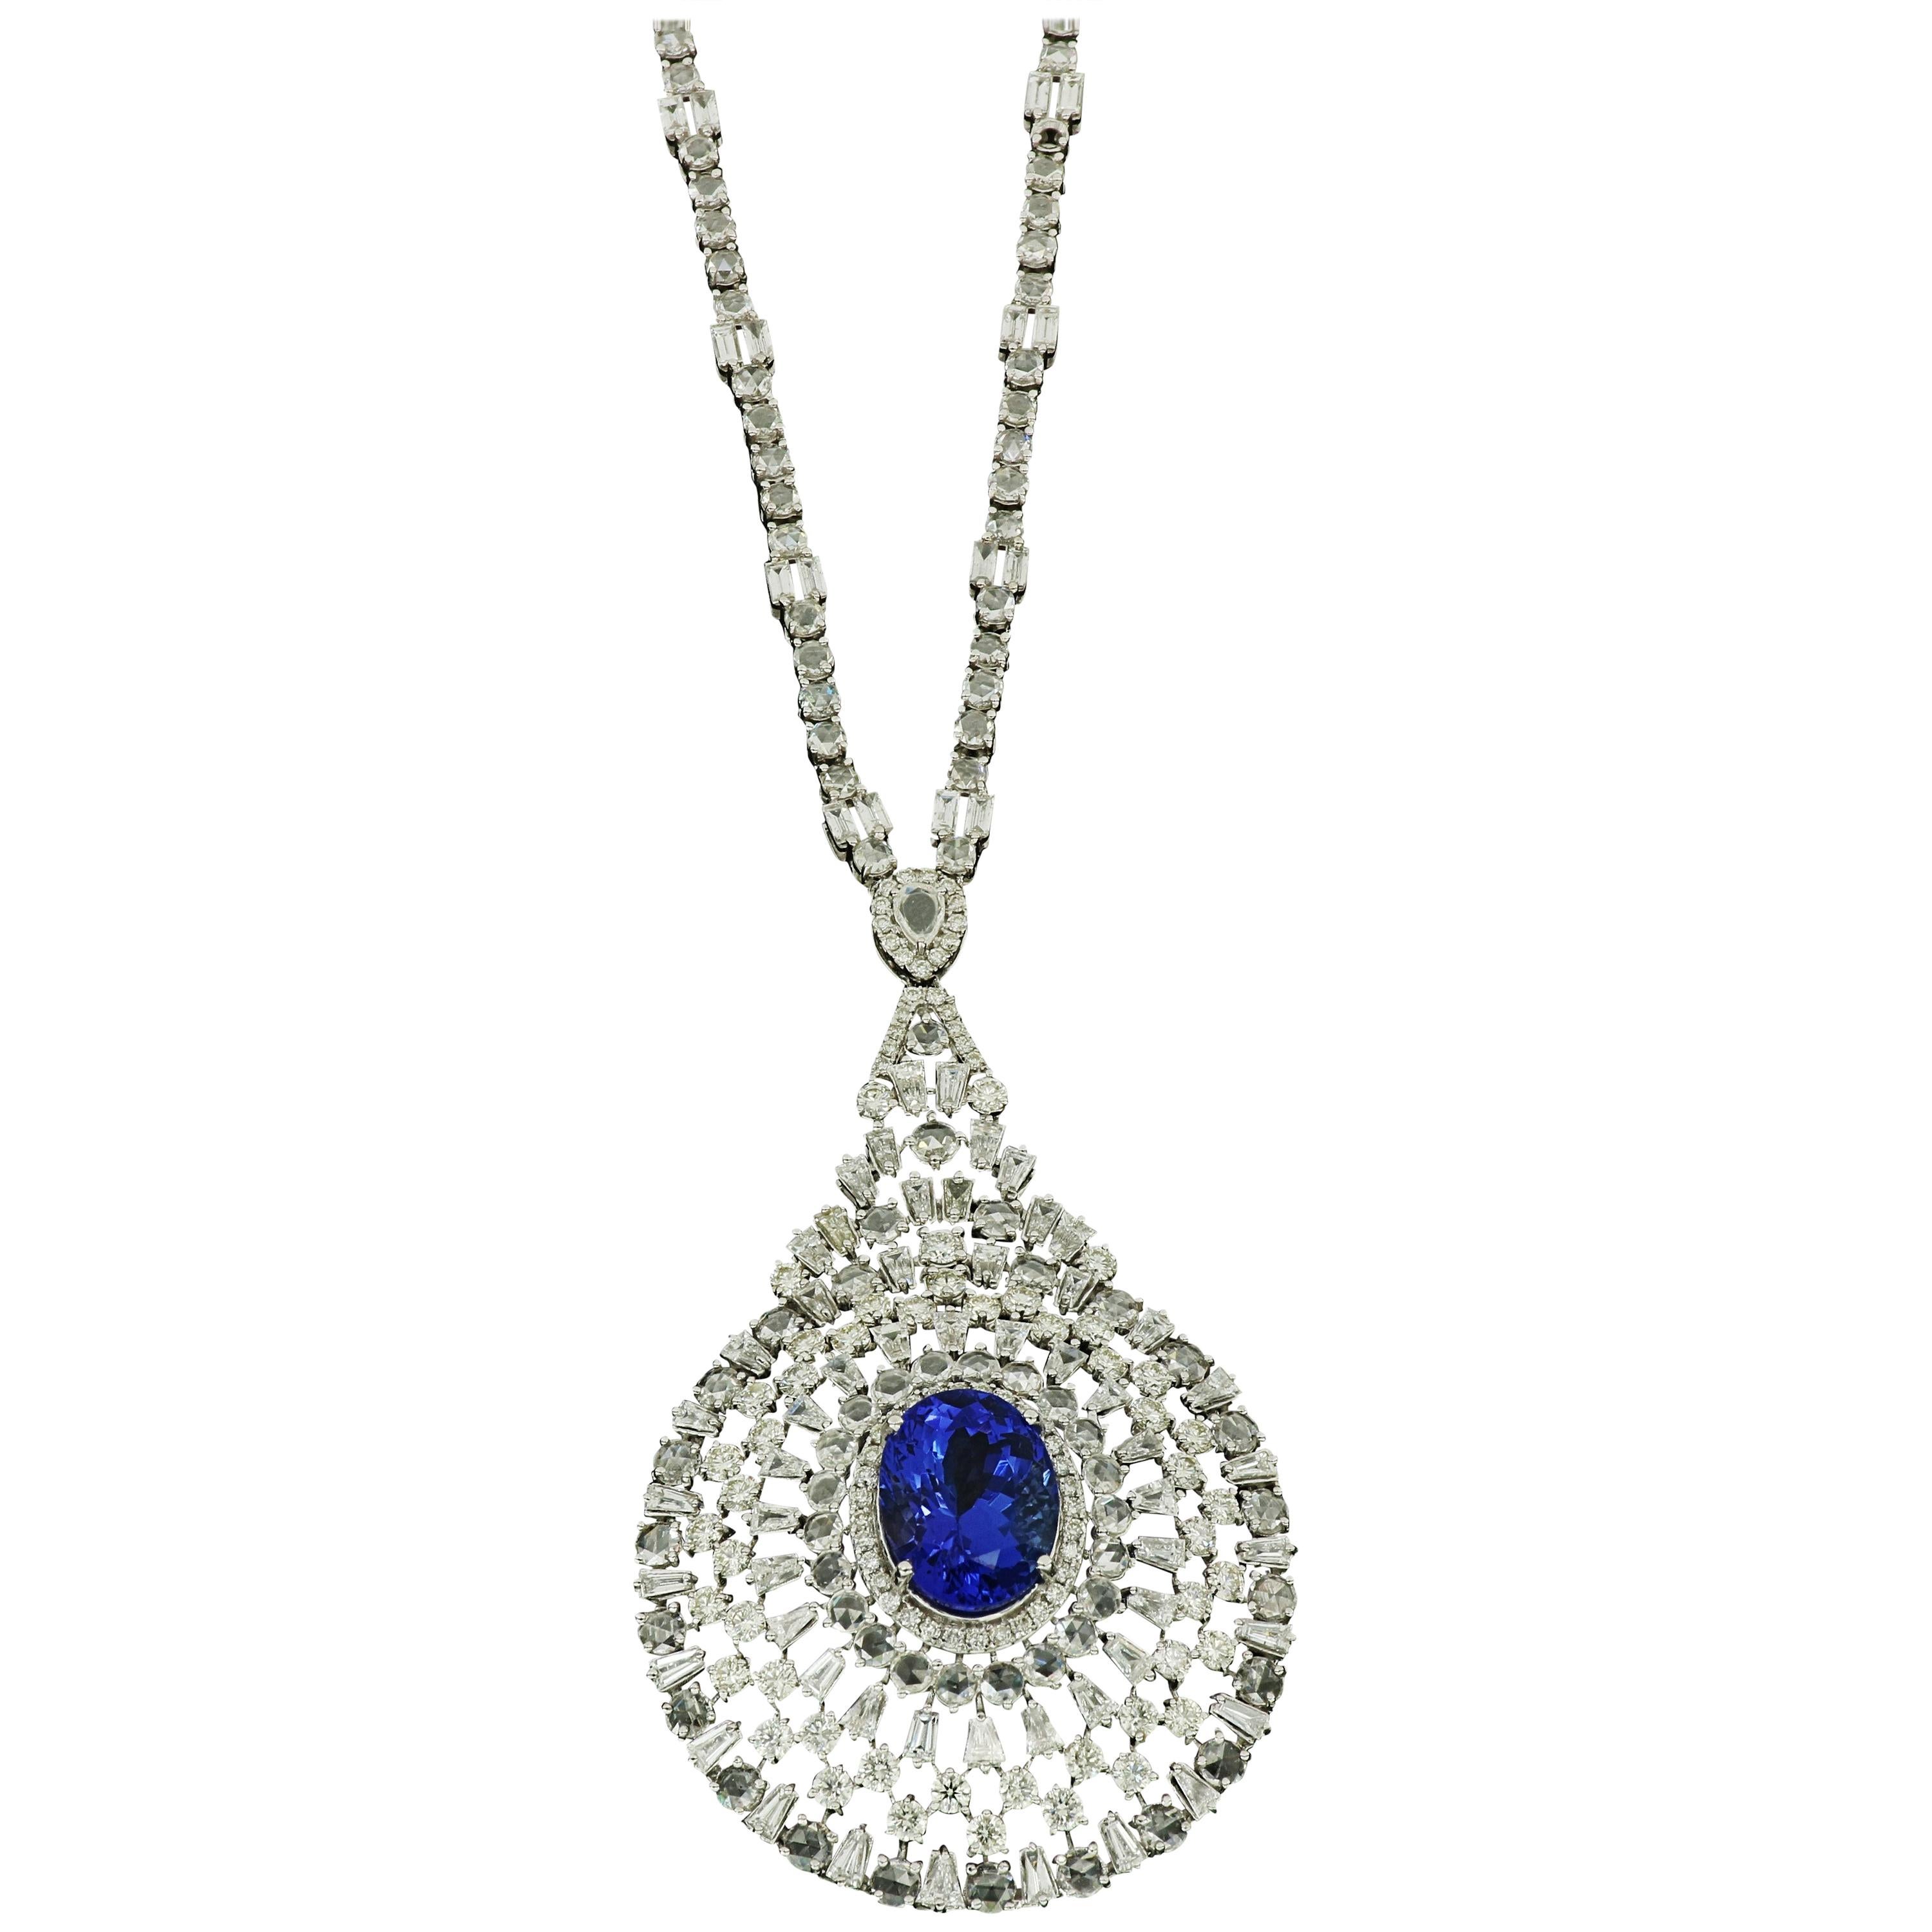 Amwaj Jewellery 18 Karat White Gold Chandelier Necklace with Diamonds